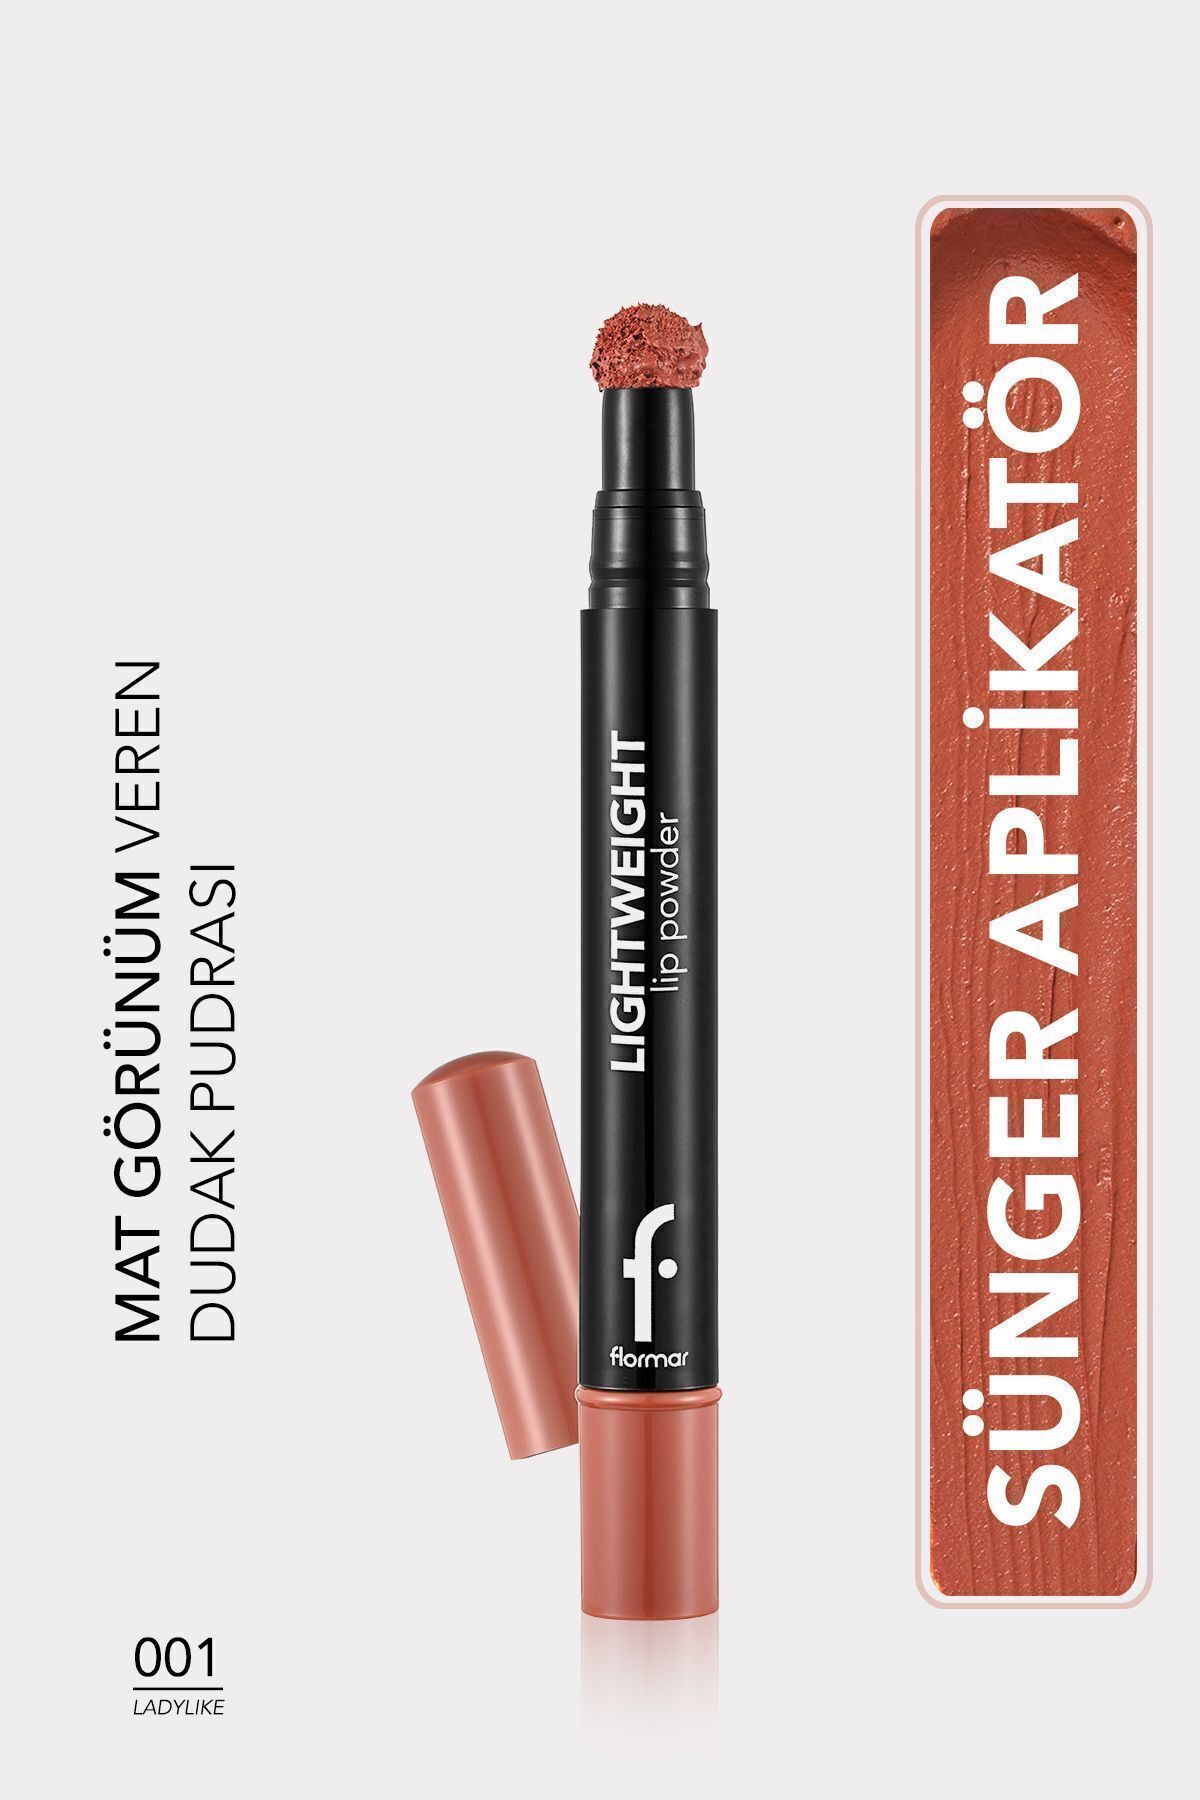 Flormar Hafif Yapılı Mat Dudak Pudrası (Ten) - Lightweight Lip Powder - 001 Ladylike - 8682536007436